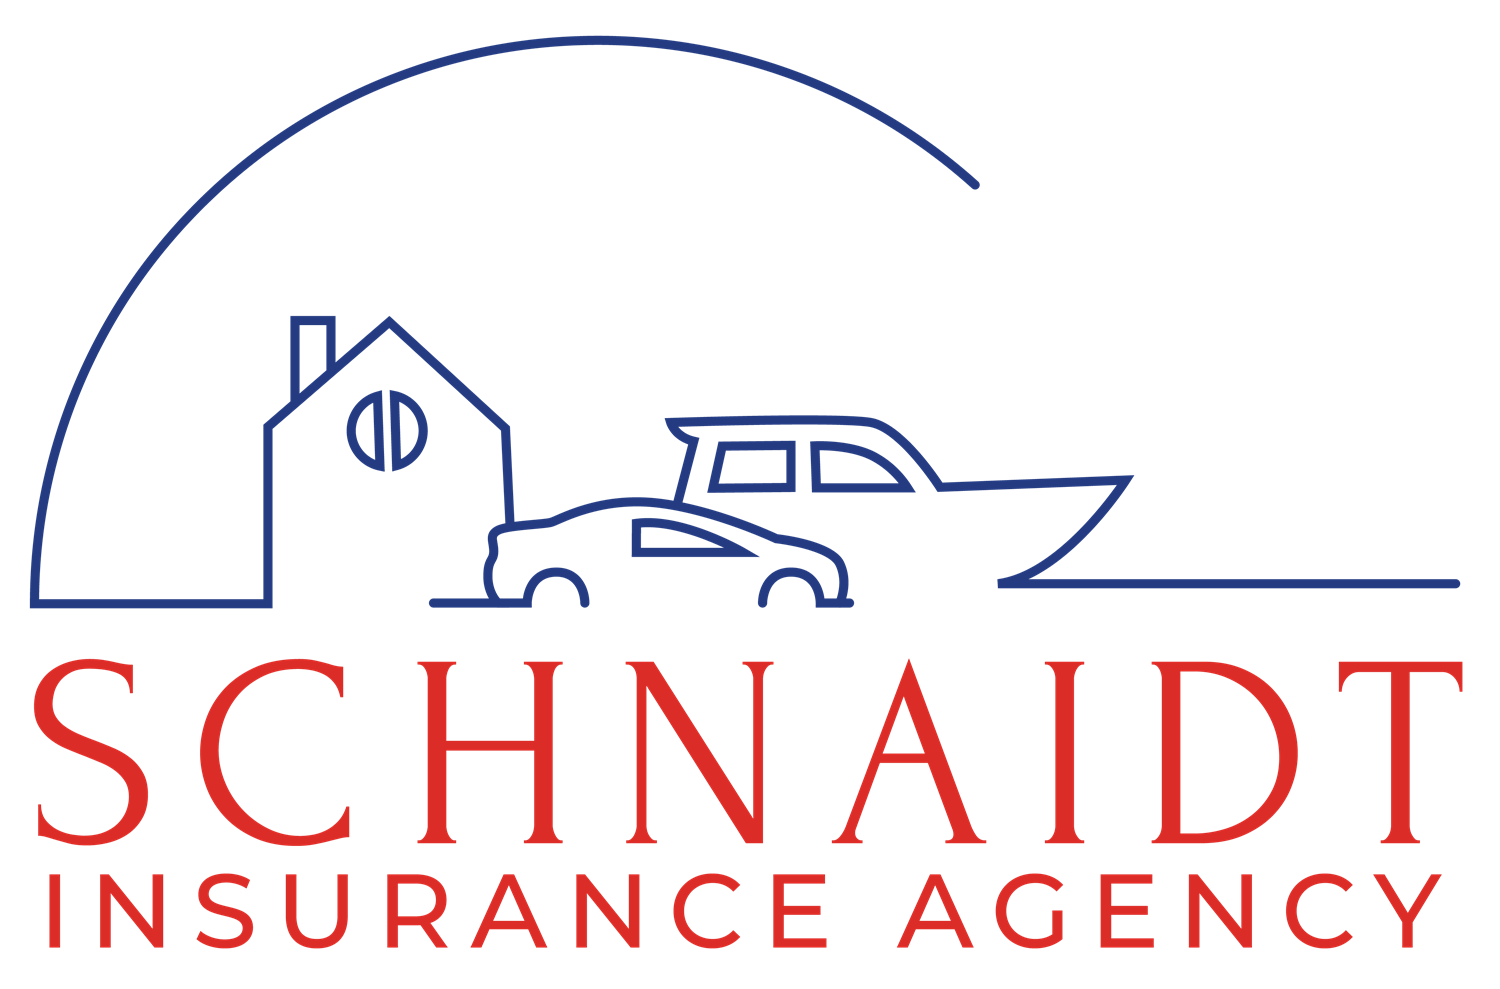 Schnaidt Agency